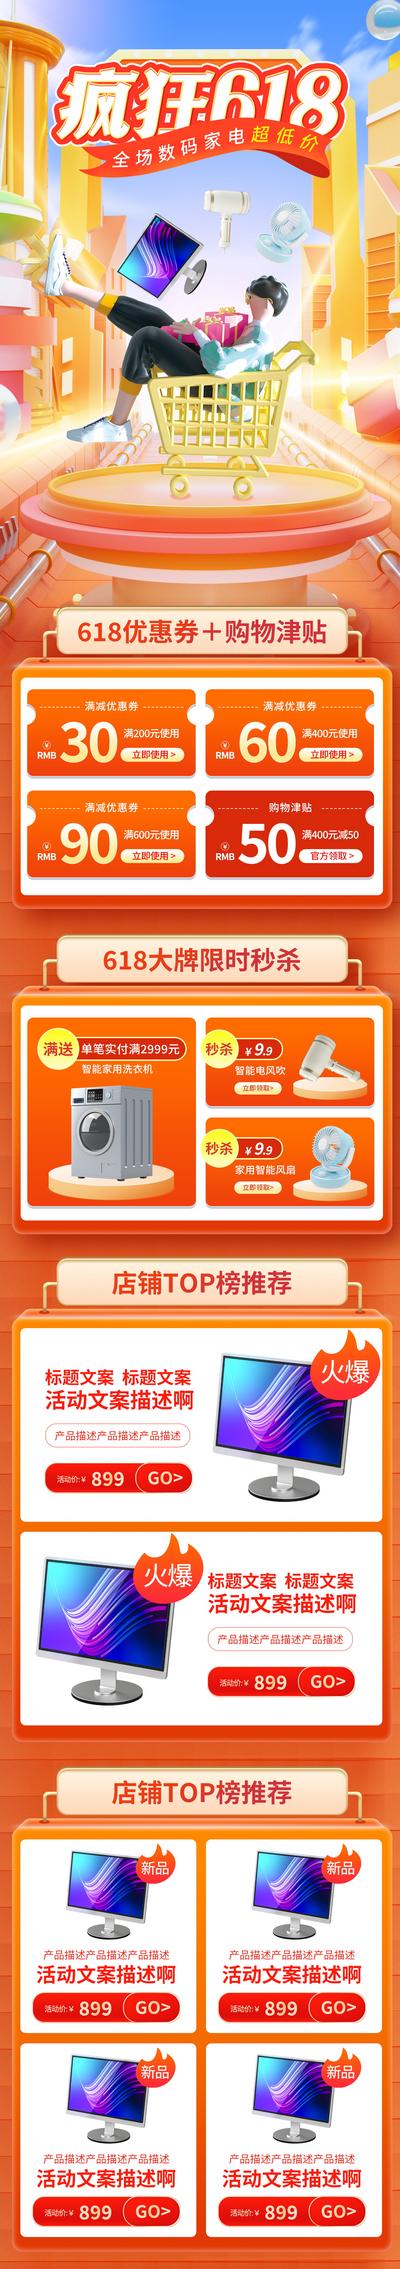 【南门网】电商 科技 促销 618 双十一 大促 数码 首页 手机 购物节 3C 专题